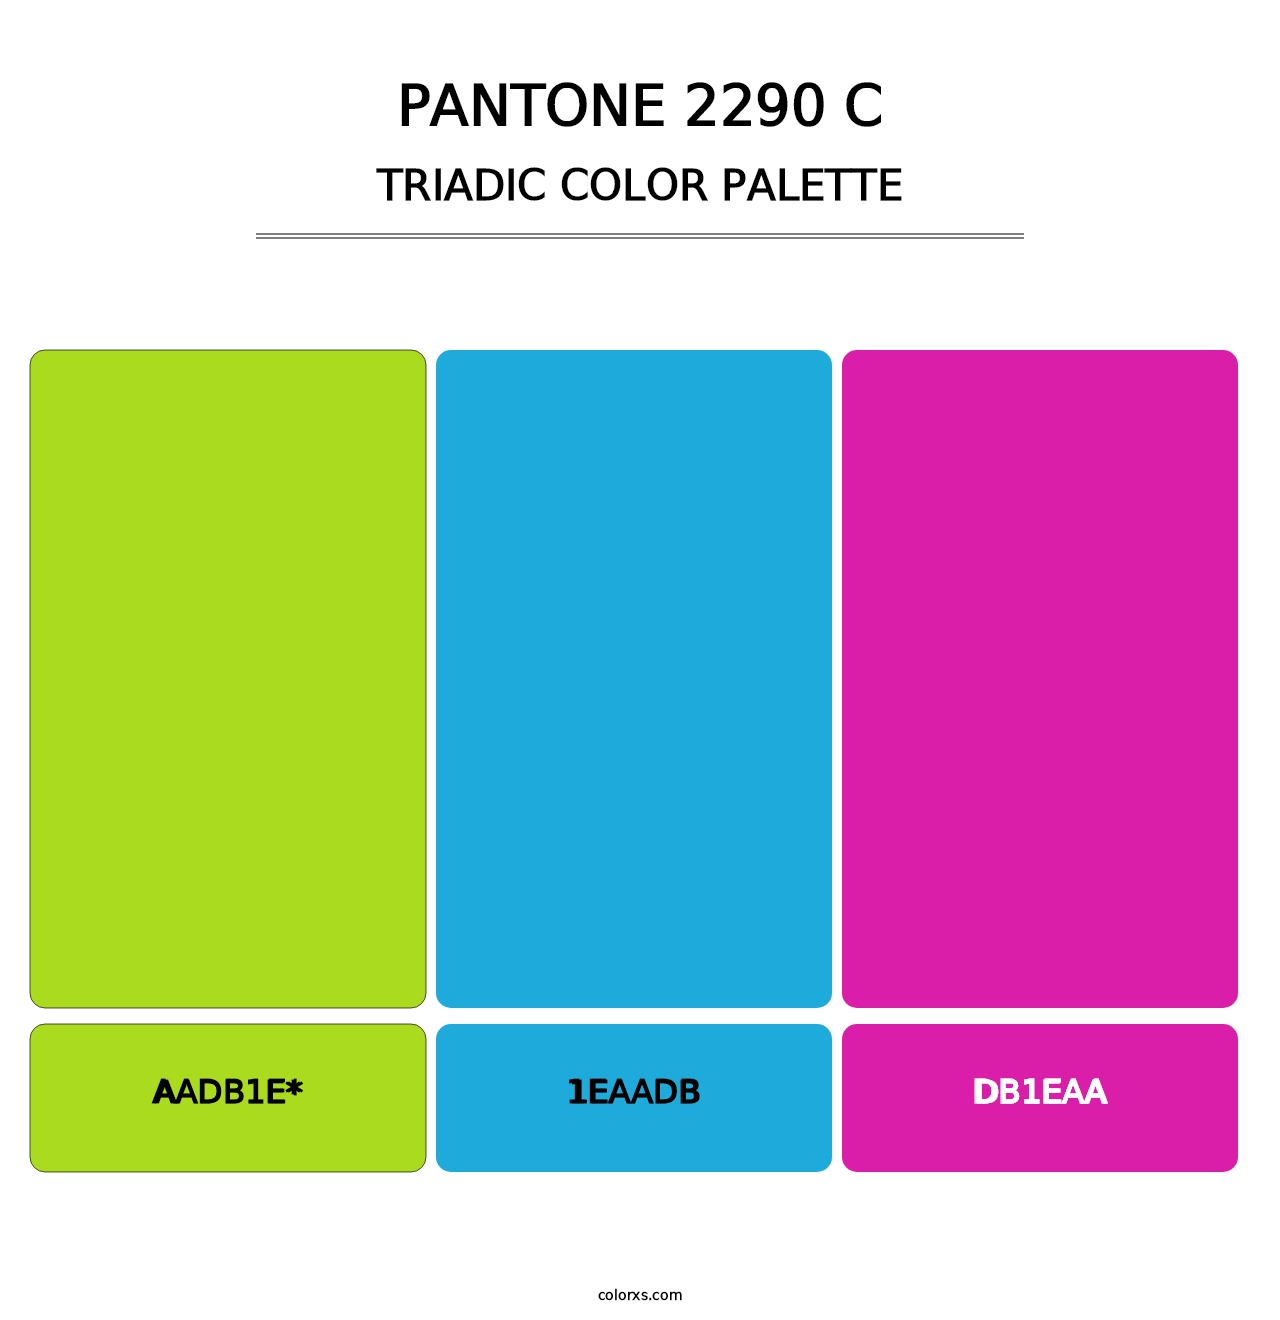 PANTONE 2290 C - Triadic Color Palette